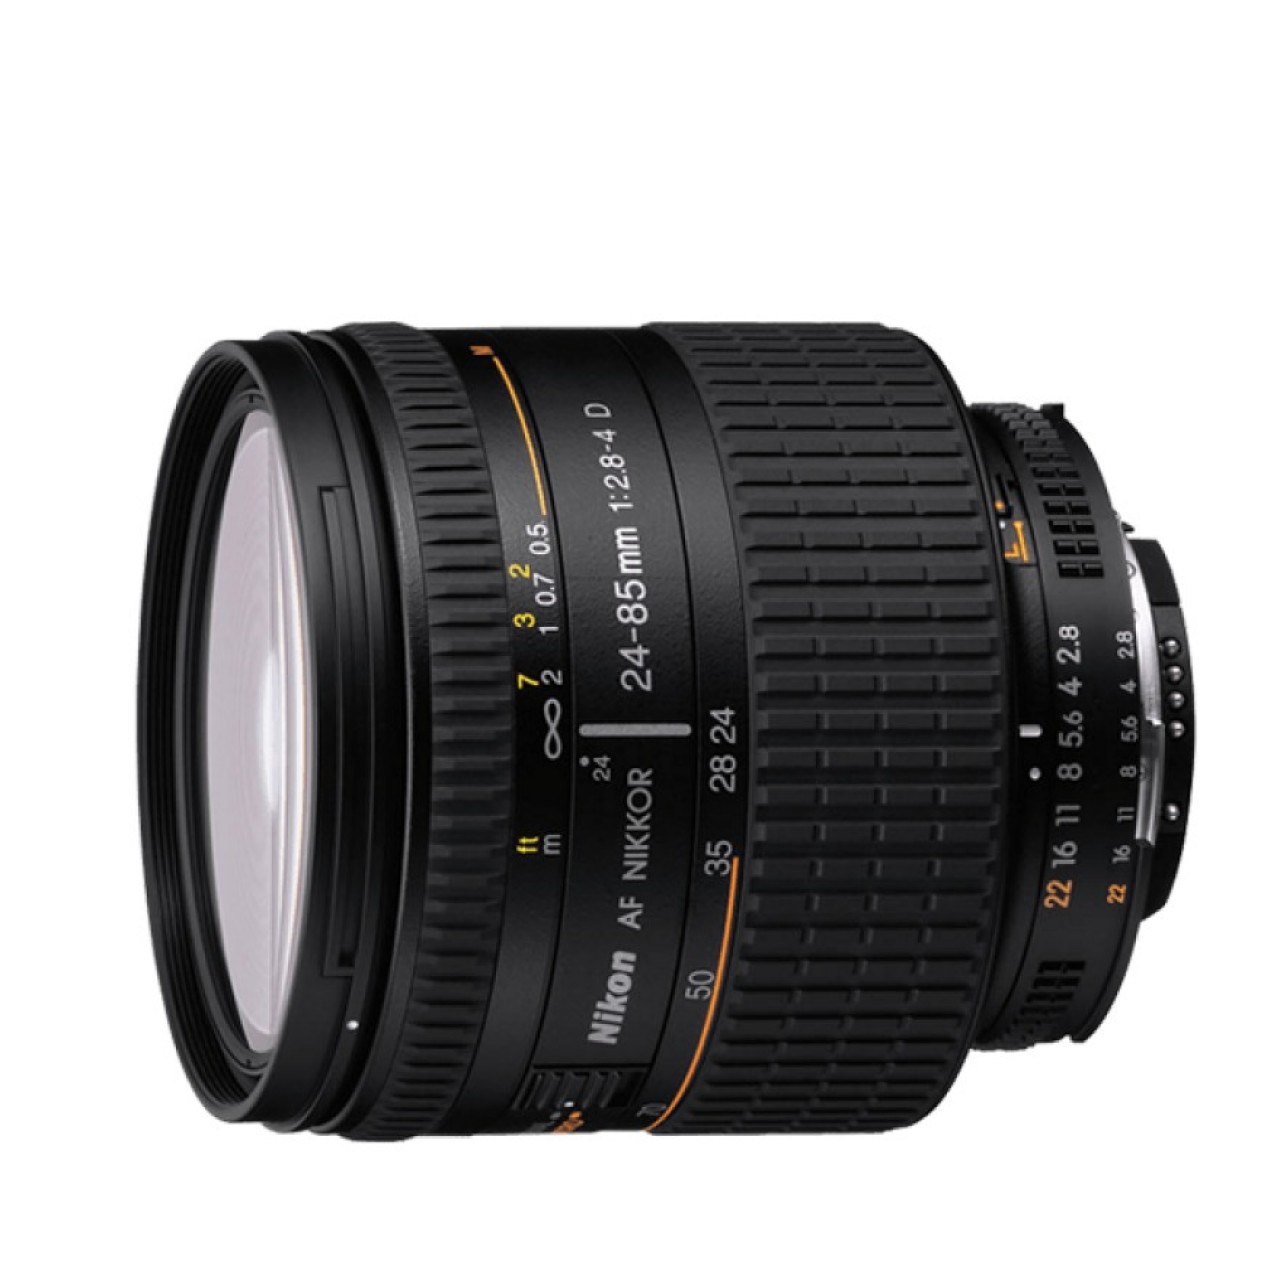 AF-S DX Micro NIKKOR 40mm f/2.8G Lens For Nikon DSLR Camera